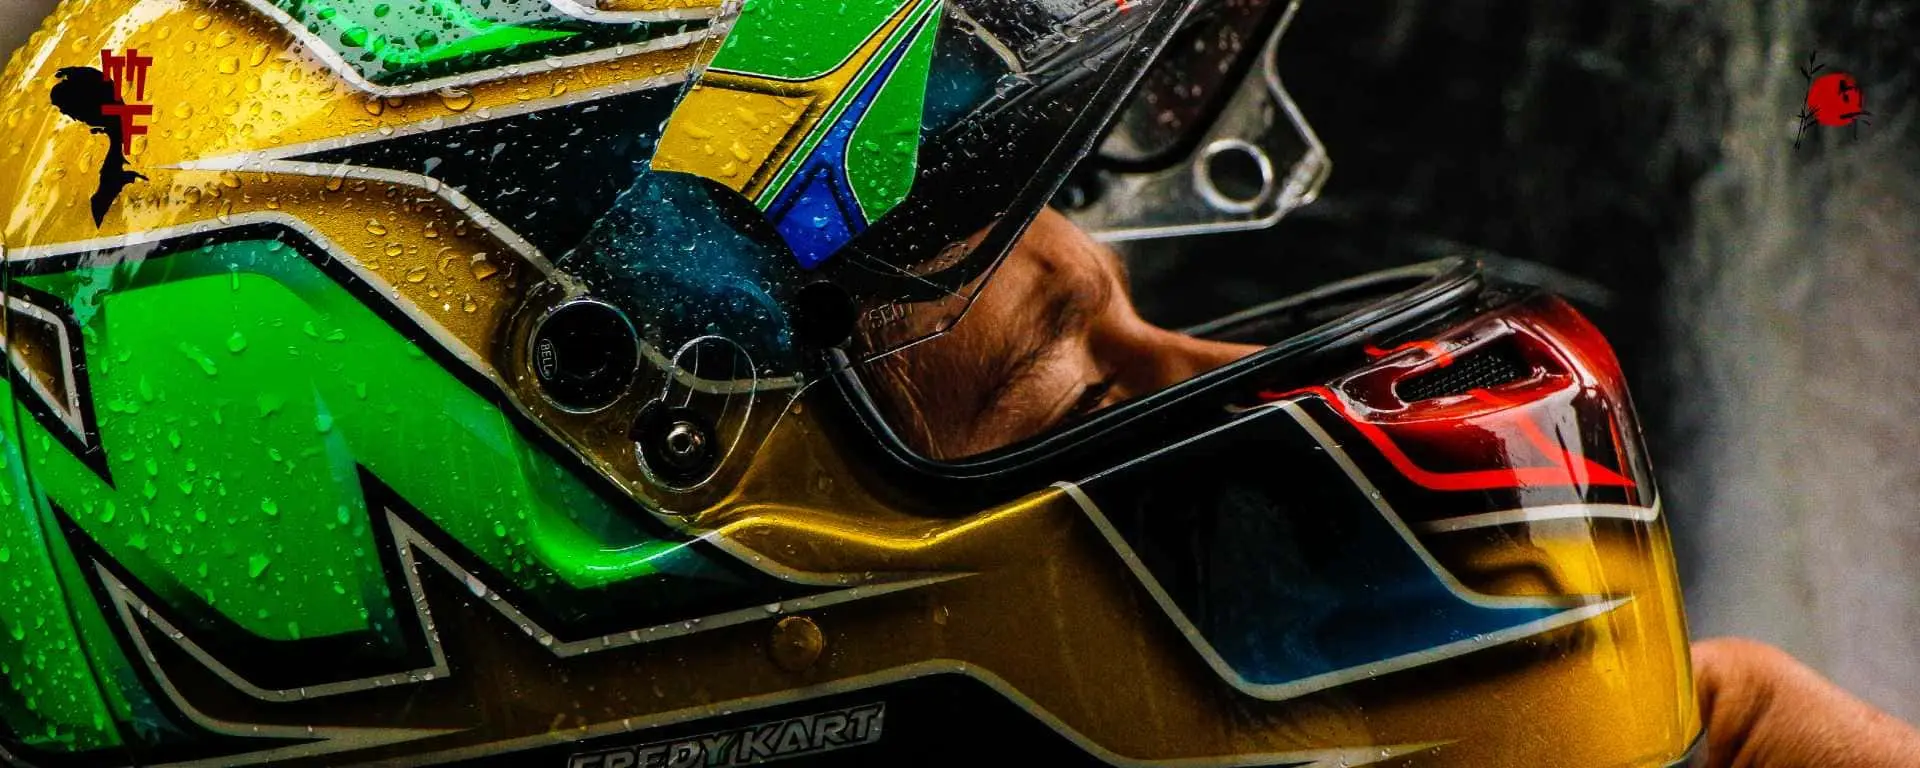 Banner da fotógrafa Bia Takeshita, apenas a cabeça do piloto enquadrado no capacede de fórmula 1, com a viseira aberta